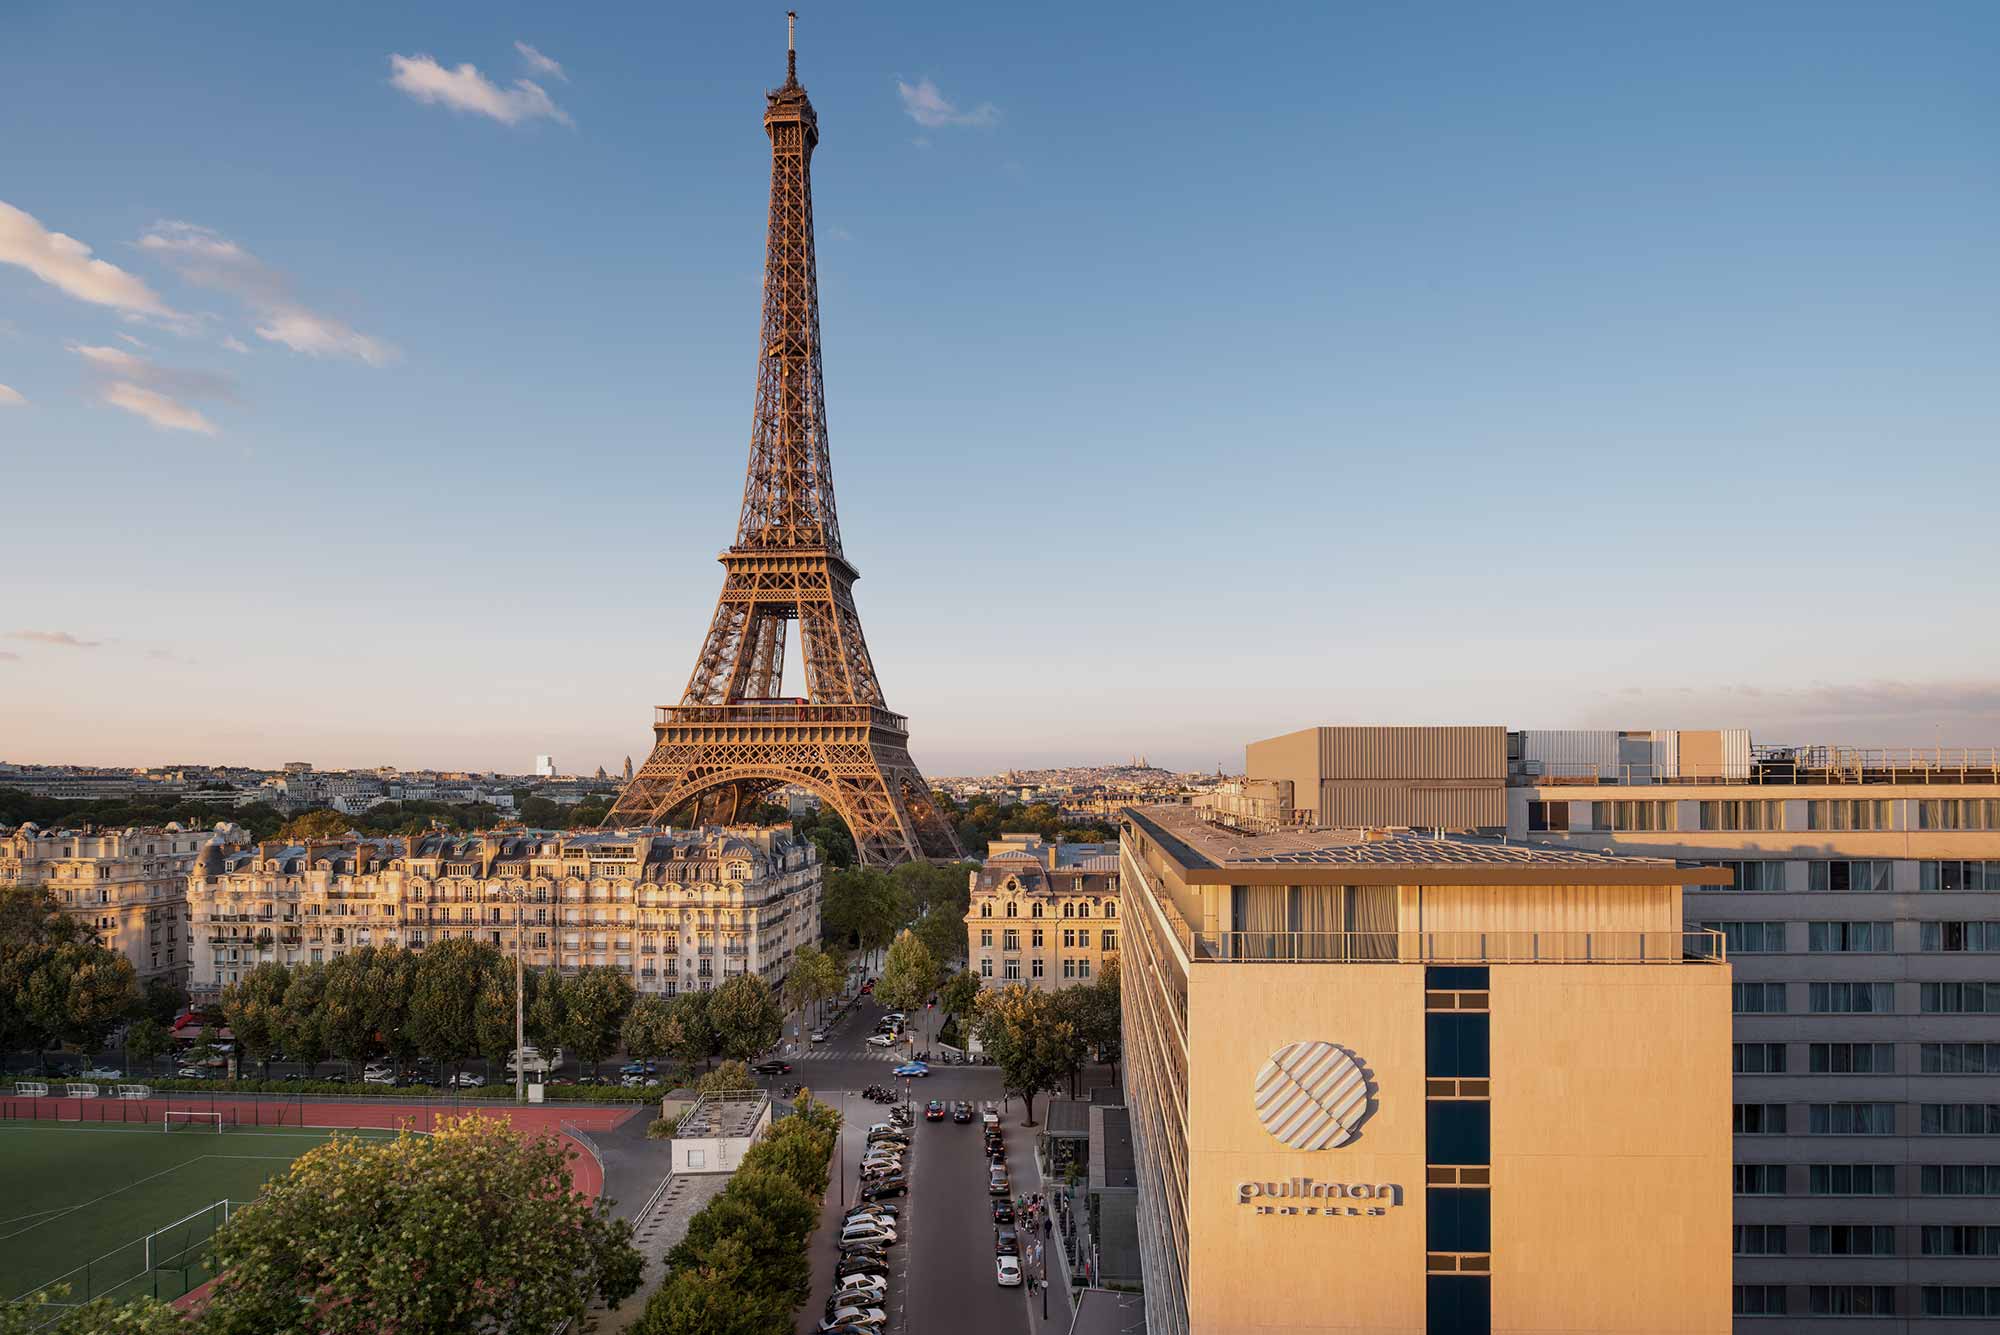 3 Paris Hotels With Eiffel Tower View  Paris hotel view, Paris hotels,  Paris hotels with eiffel tower view